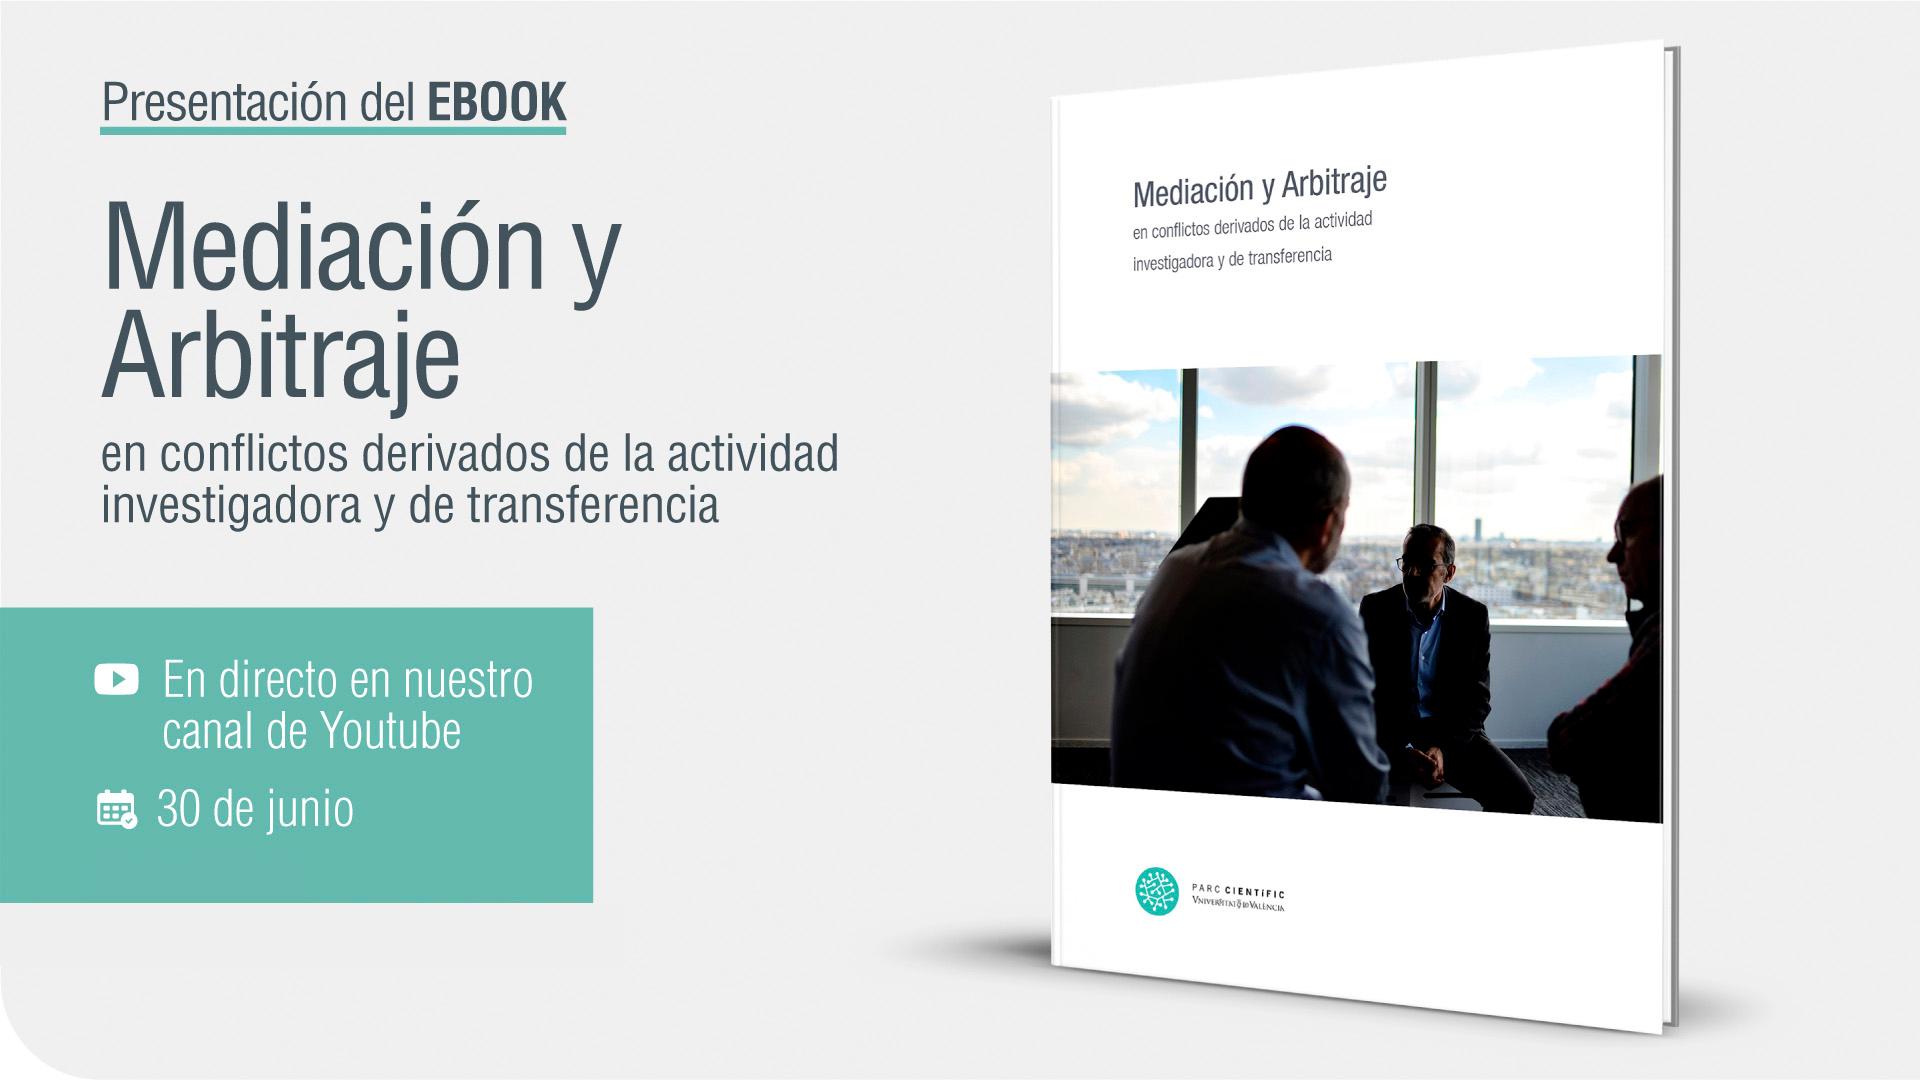 Introduction to the ebook 'Mediación y Arbitraje en conflictos derivados de la actividad investigadora y de transferencia'